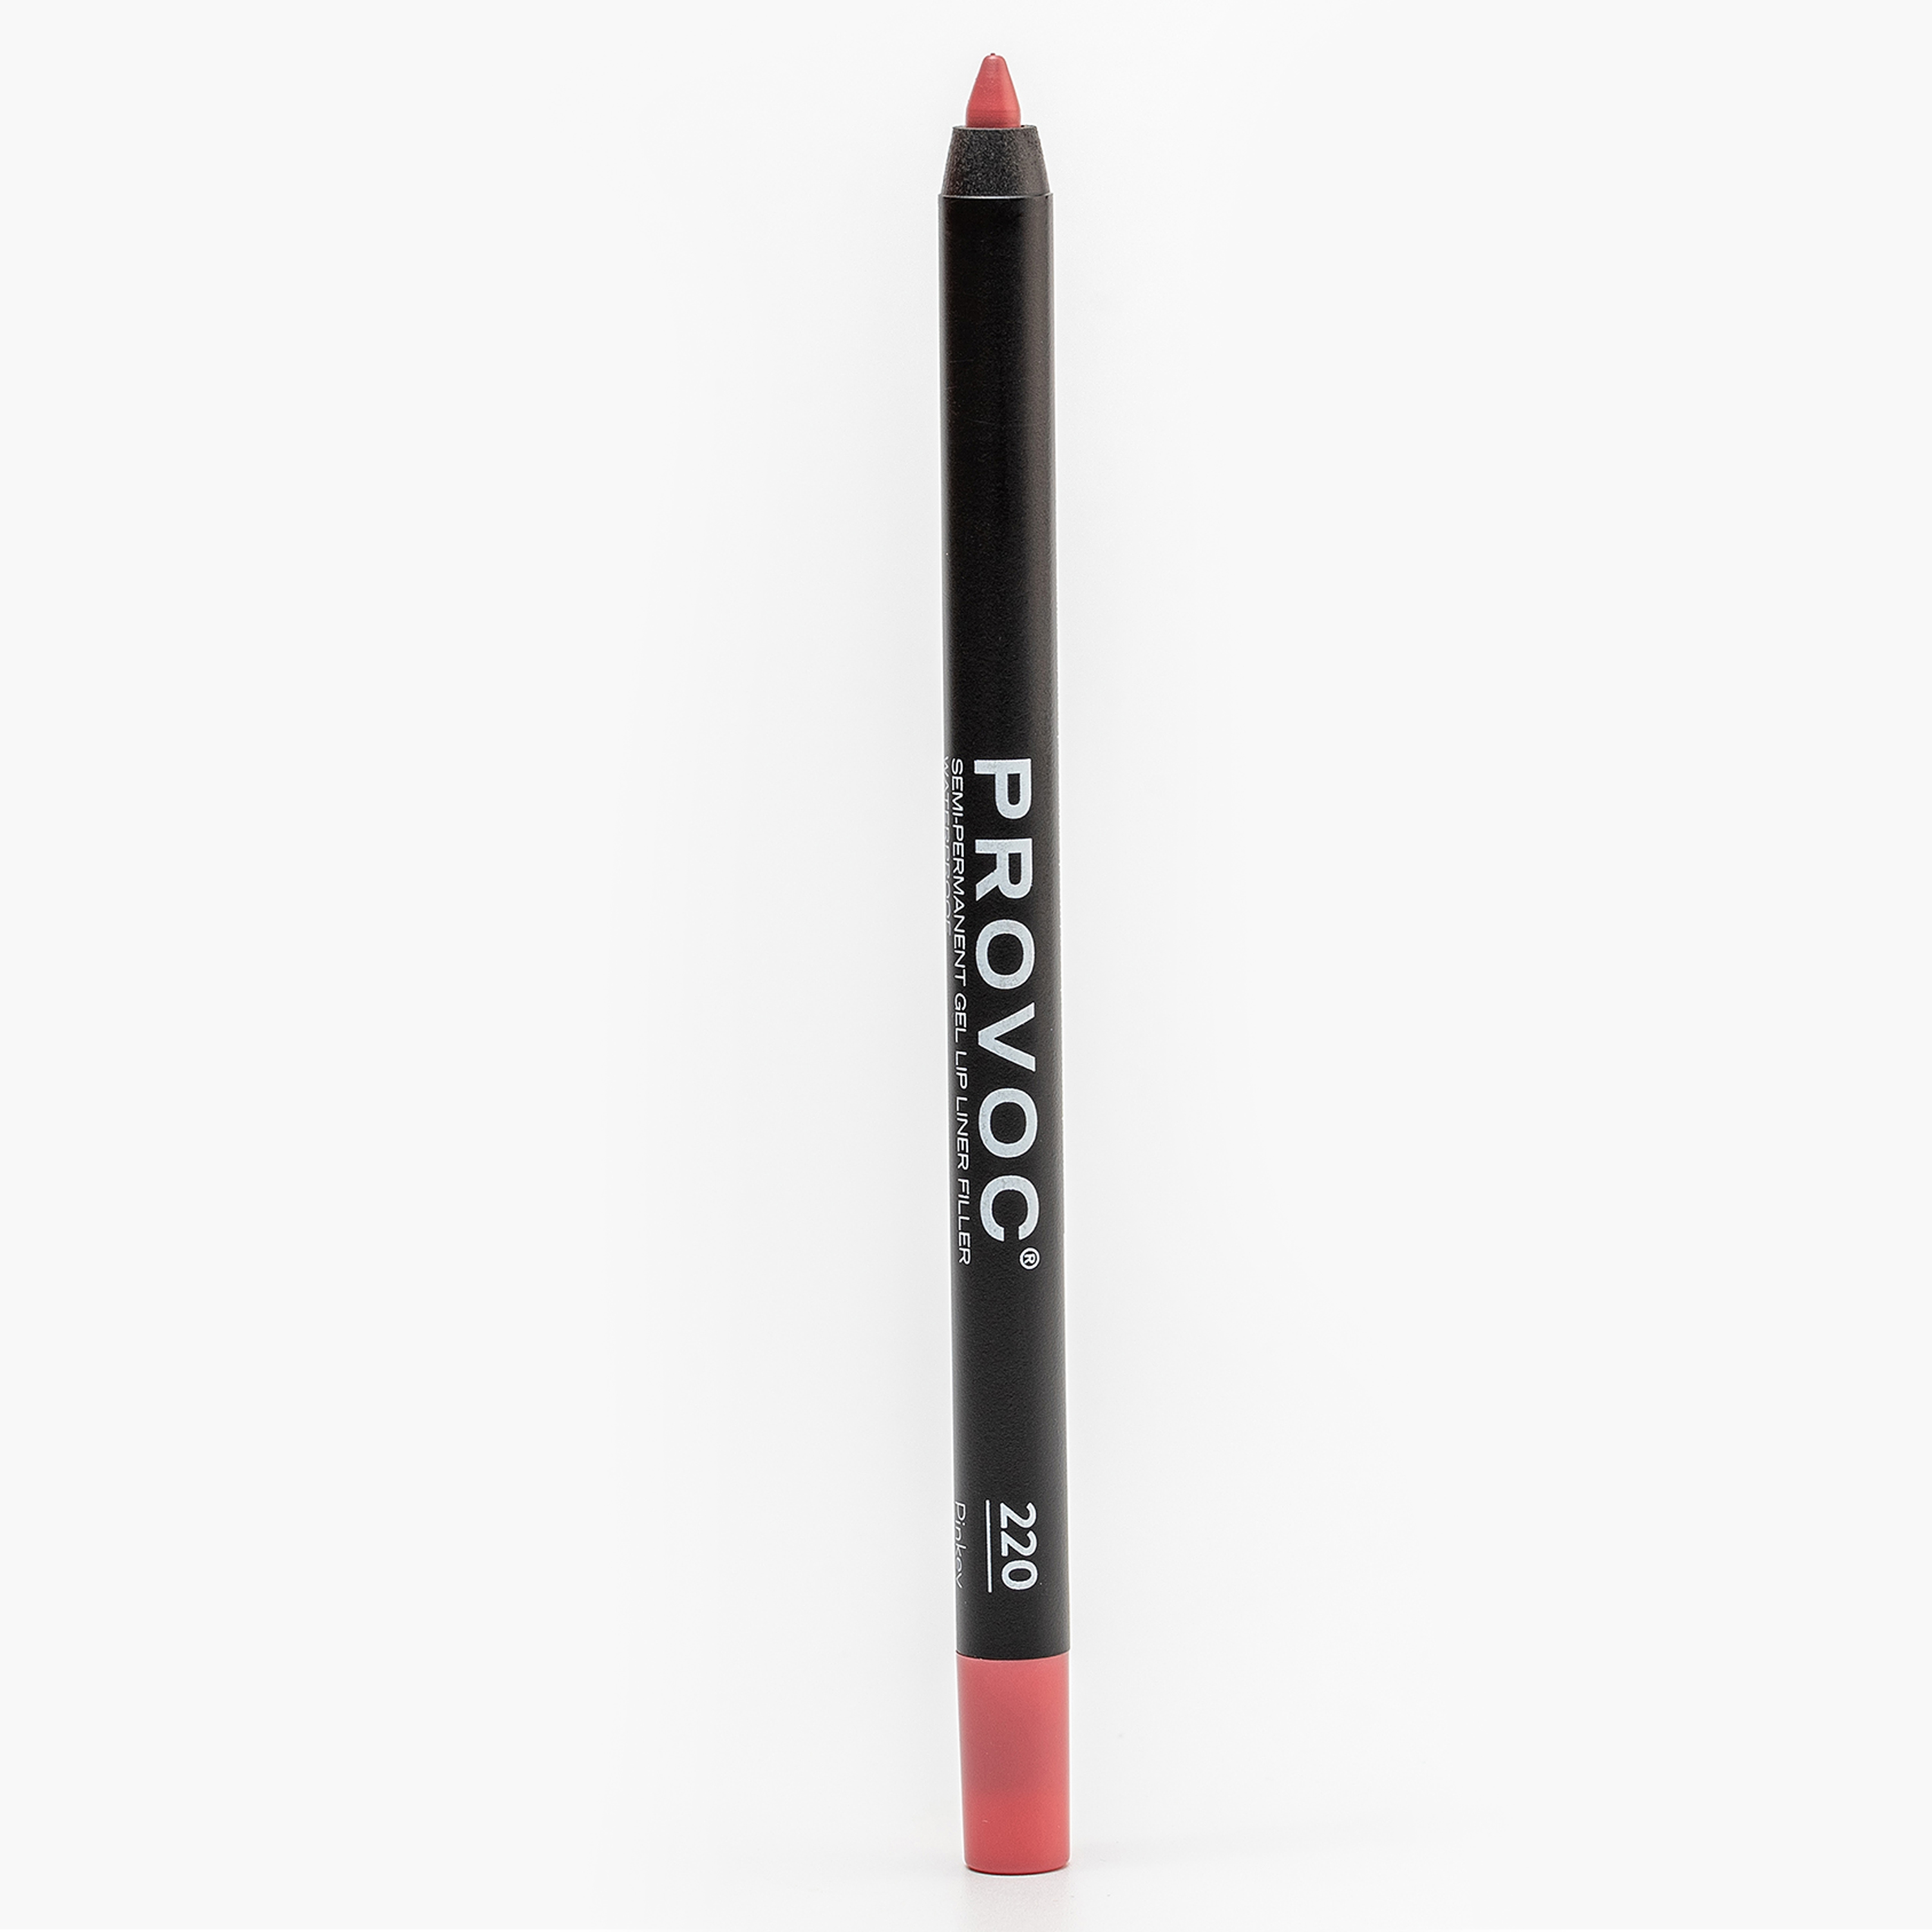 Карандаш для губ PROVOC Gel Lip Liner гелевый, №220 Pinkey розово-бежево-лососевый, 1,2 г карандаш для губ provoc gel lip liner гелевый 18 irresistible натурально розовый 1 2 г